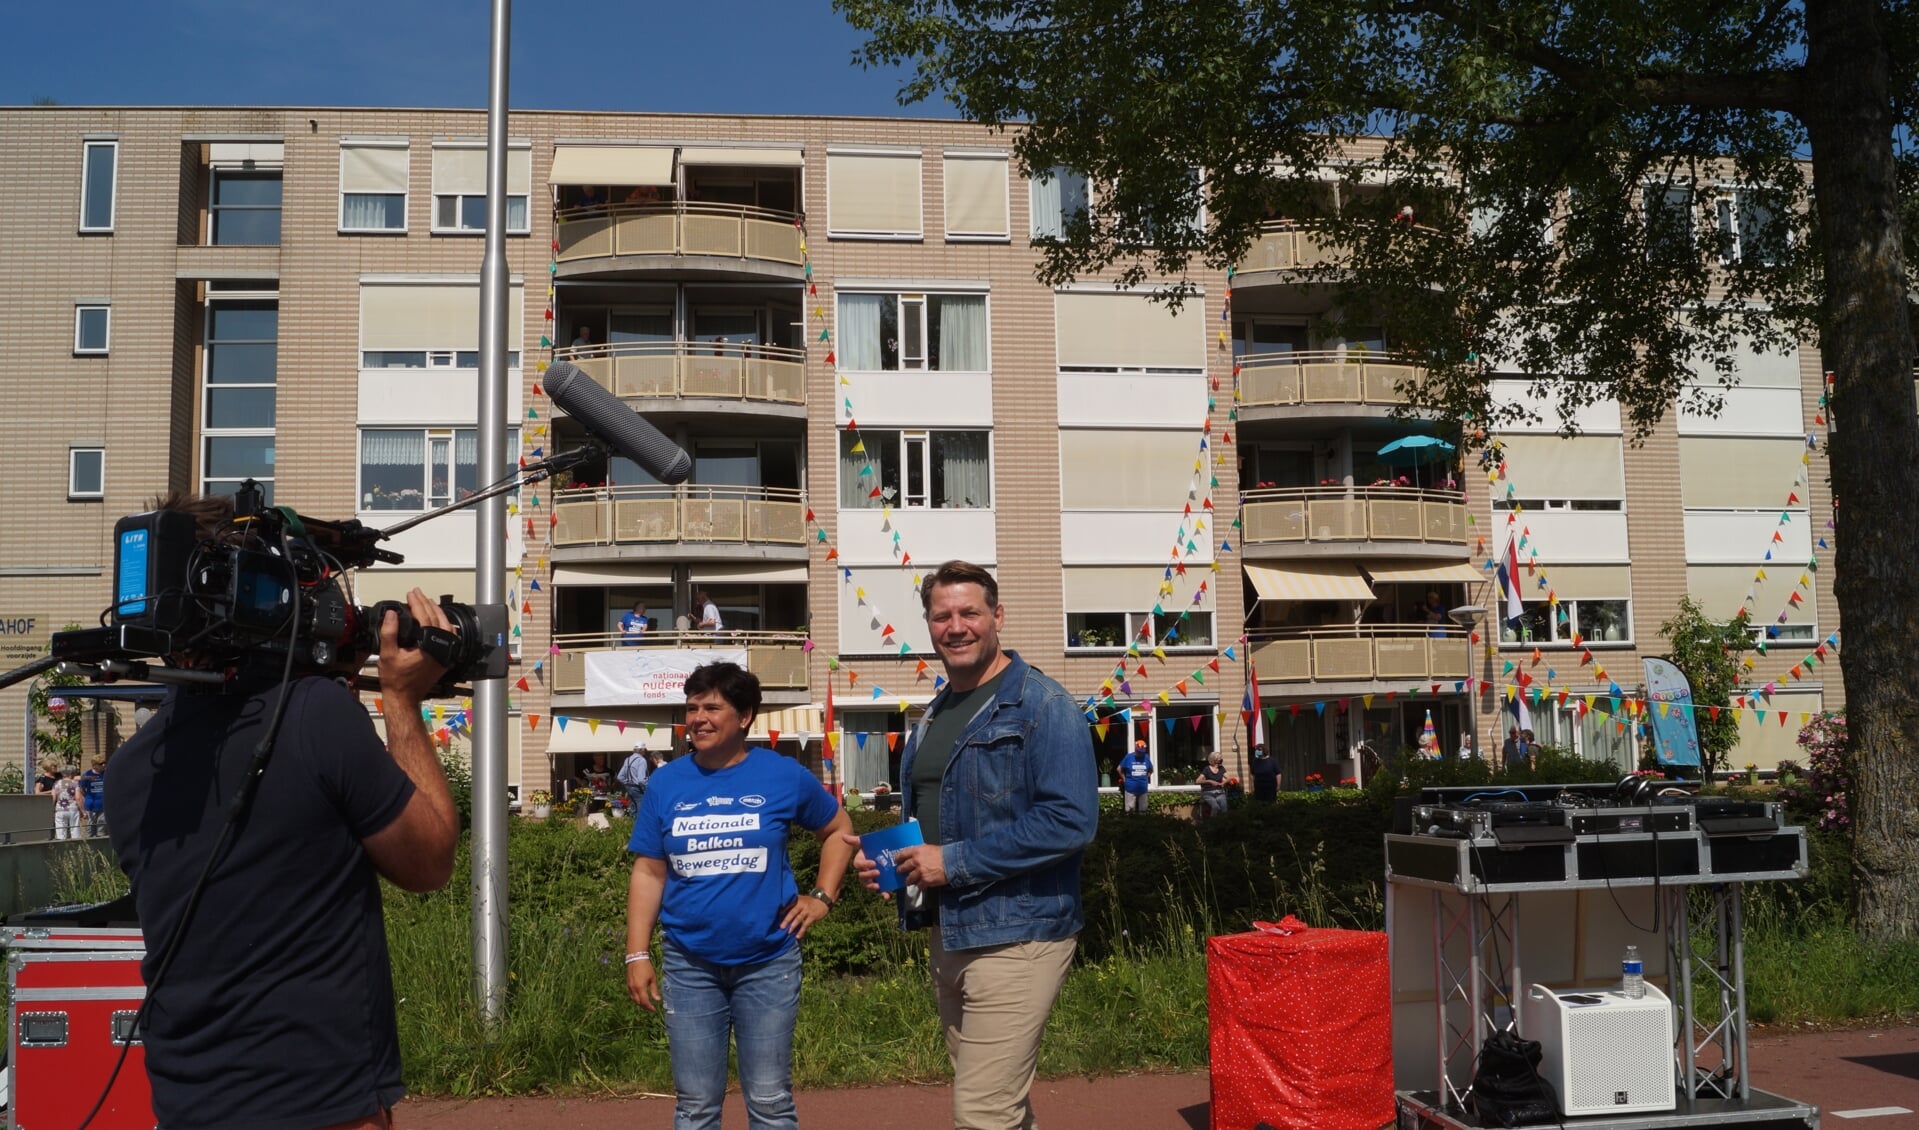 Mieke Regelink met DJ Dennis van der Geest bij de feestelijke editie van het balkonbewegen bij de Dignahoeve.